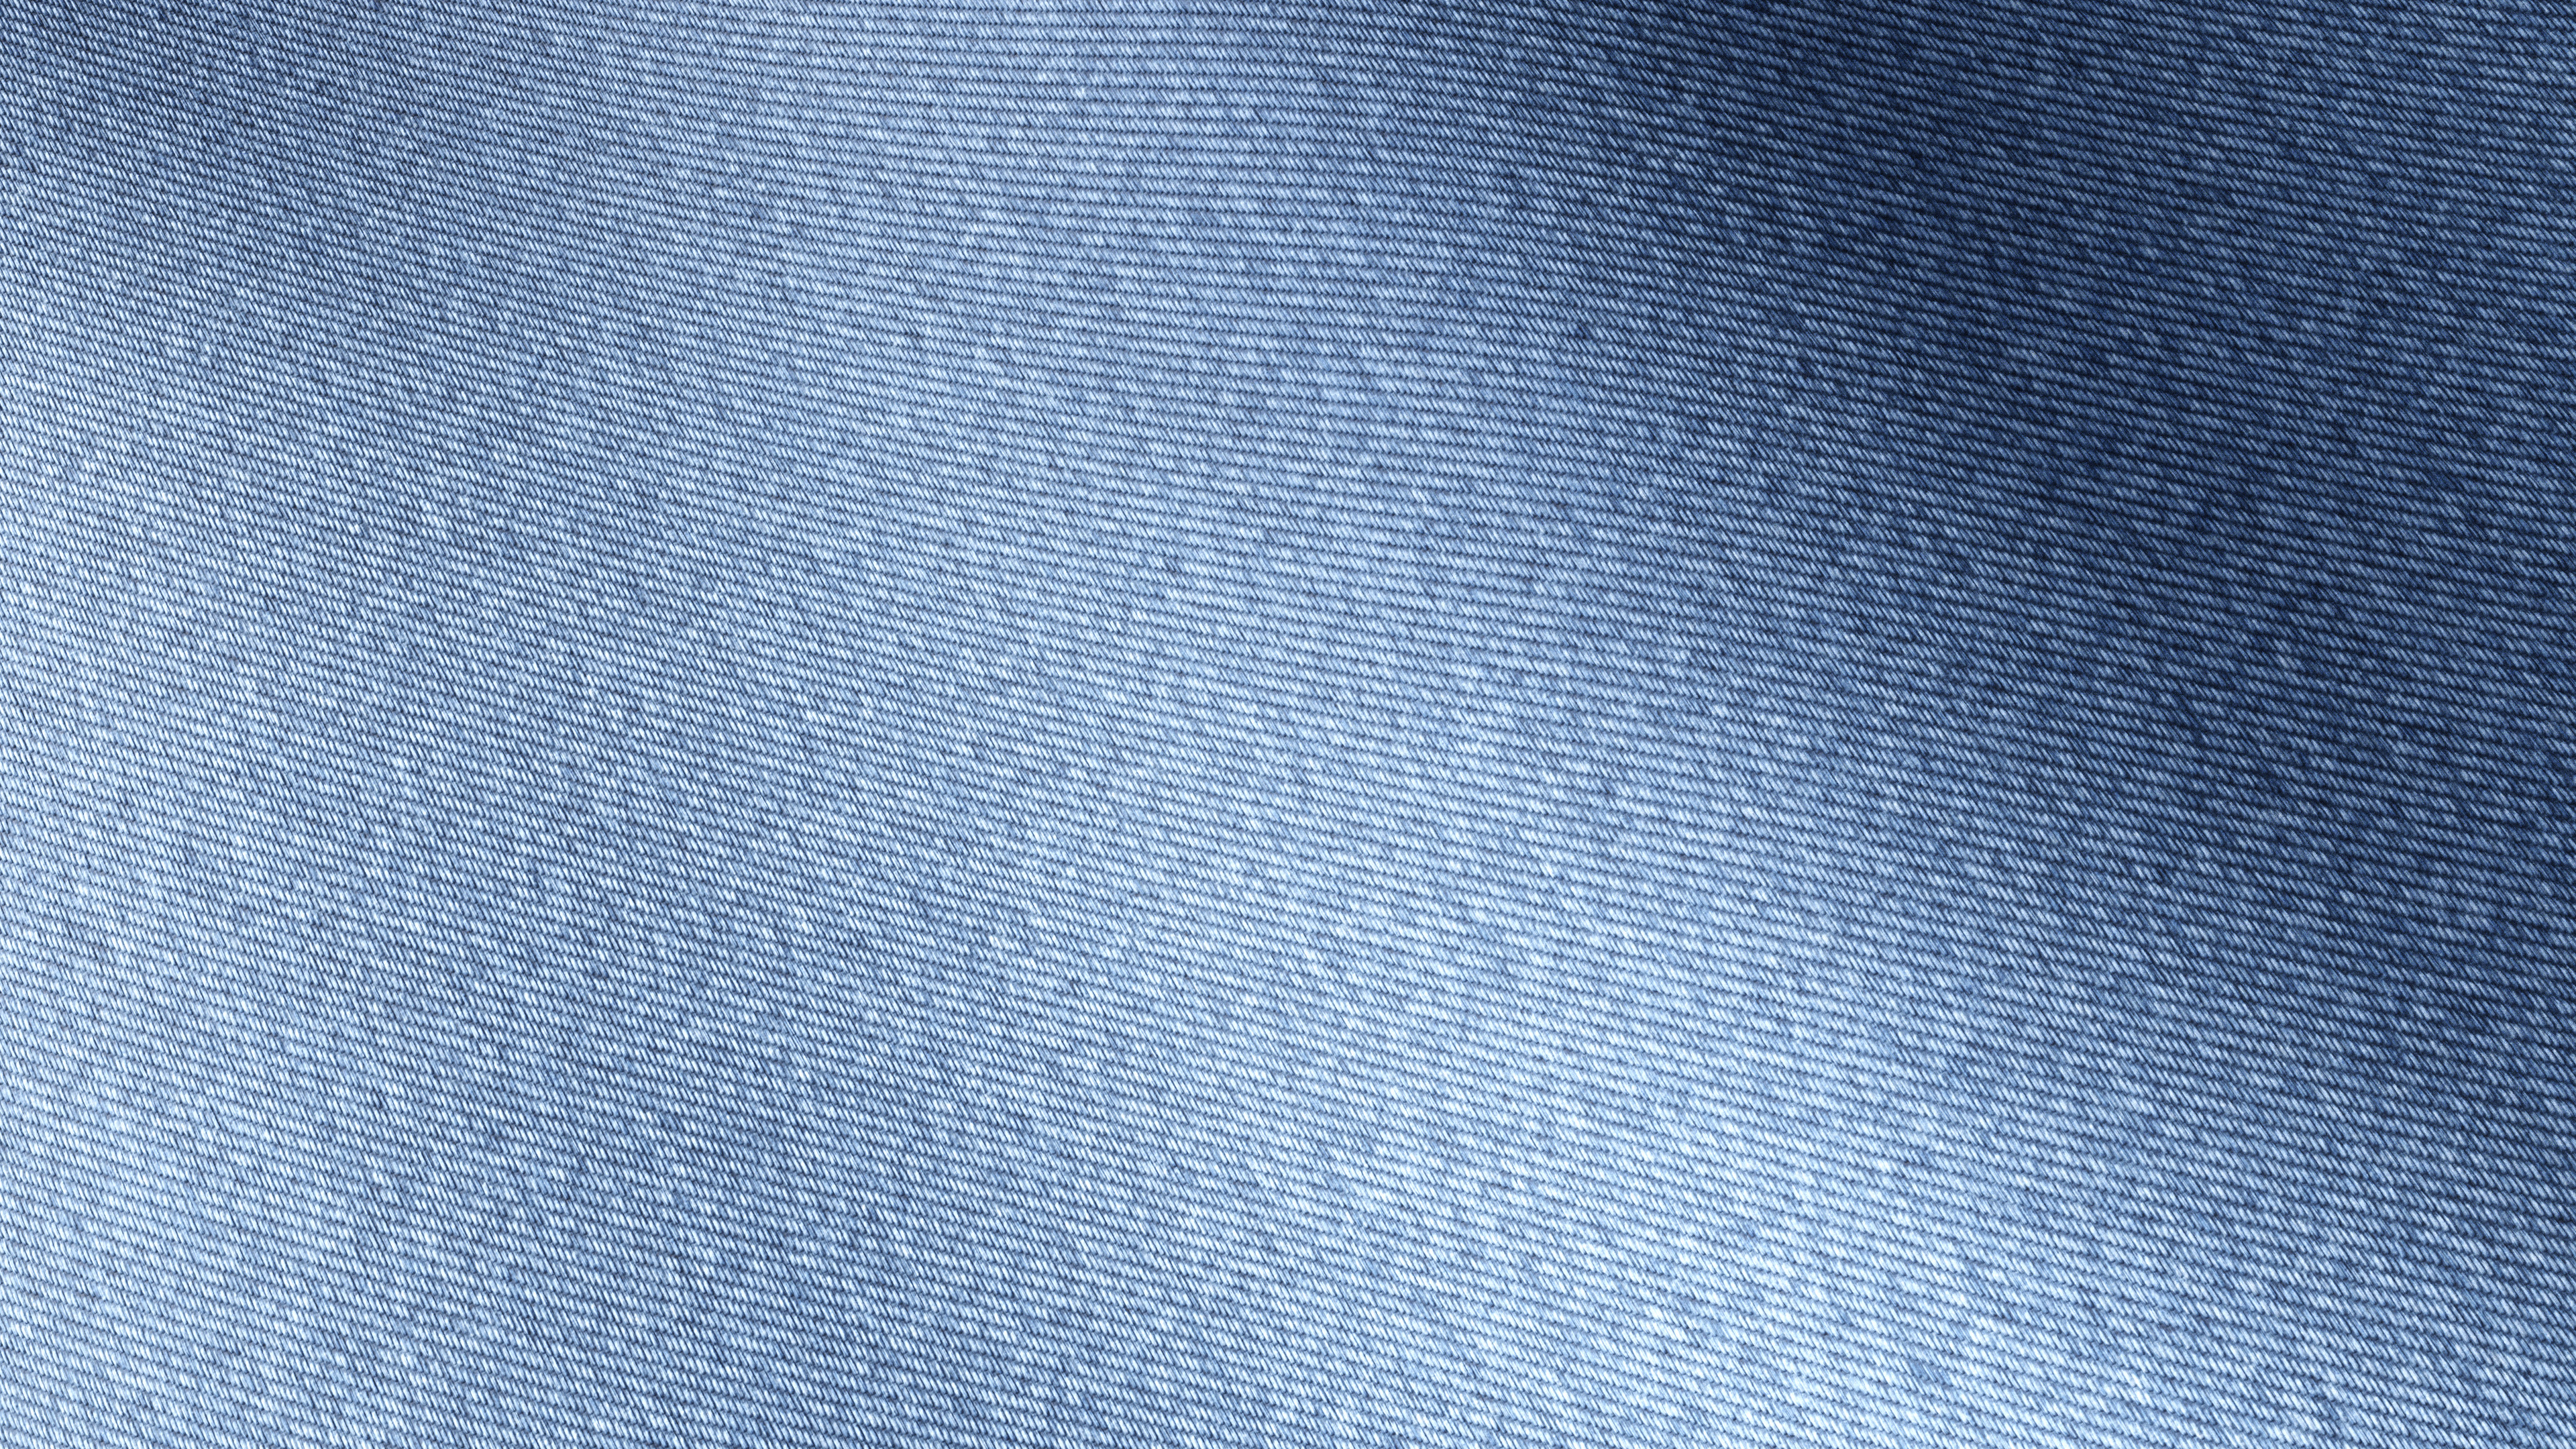 Текстура джинсов. Джинсовая ткань. Фактура джинсовой ткани. Текстура ткани. Текстура джинс.